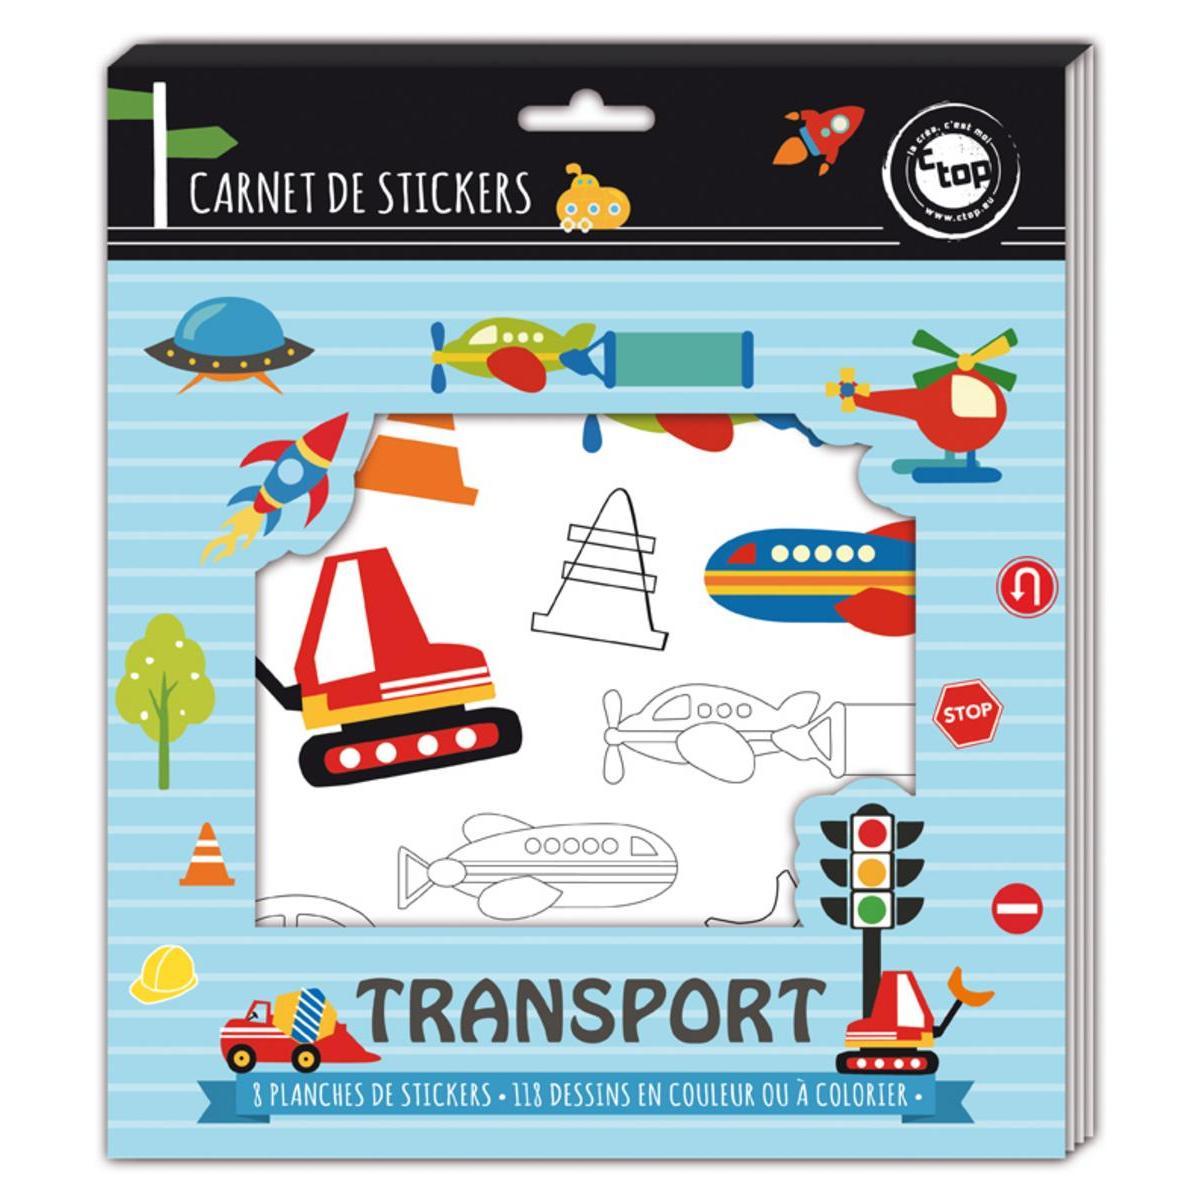 Carnet de stickers transports - Papier - 22,2 x 0,2 x 25,5 cm - Multicolore